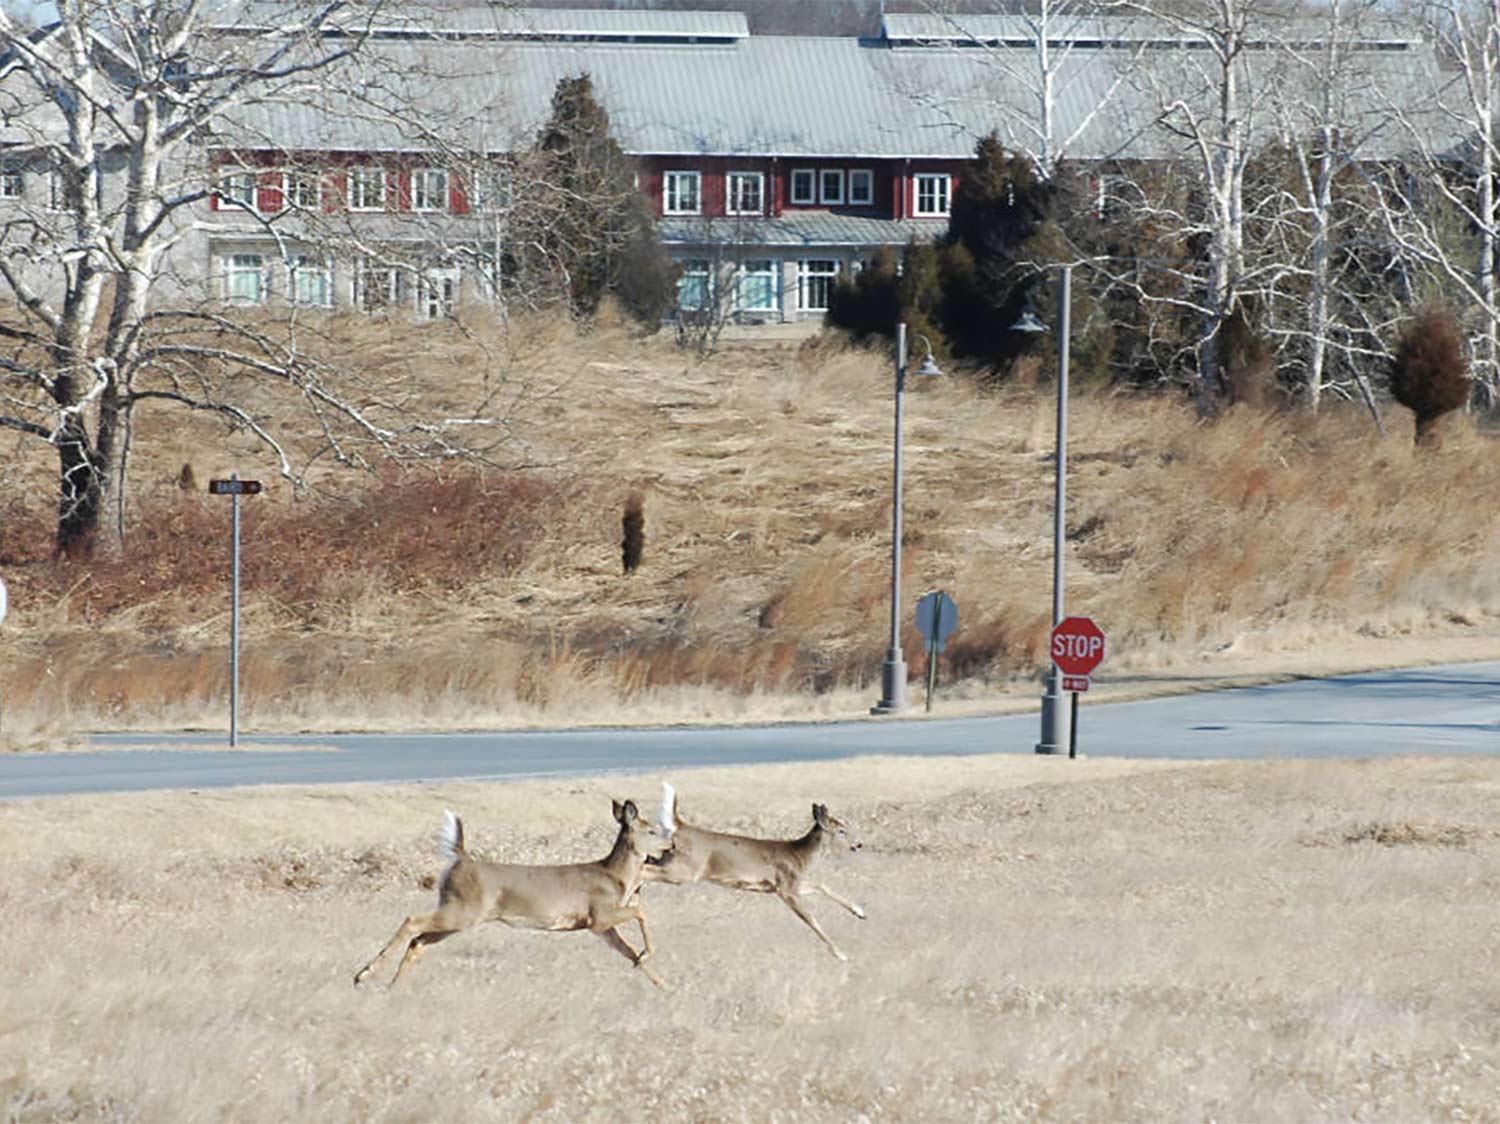 Two deer running through an open field near a road.